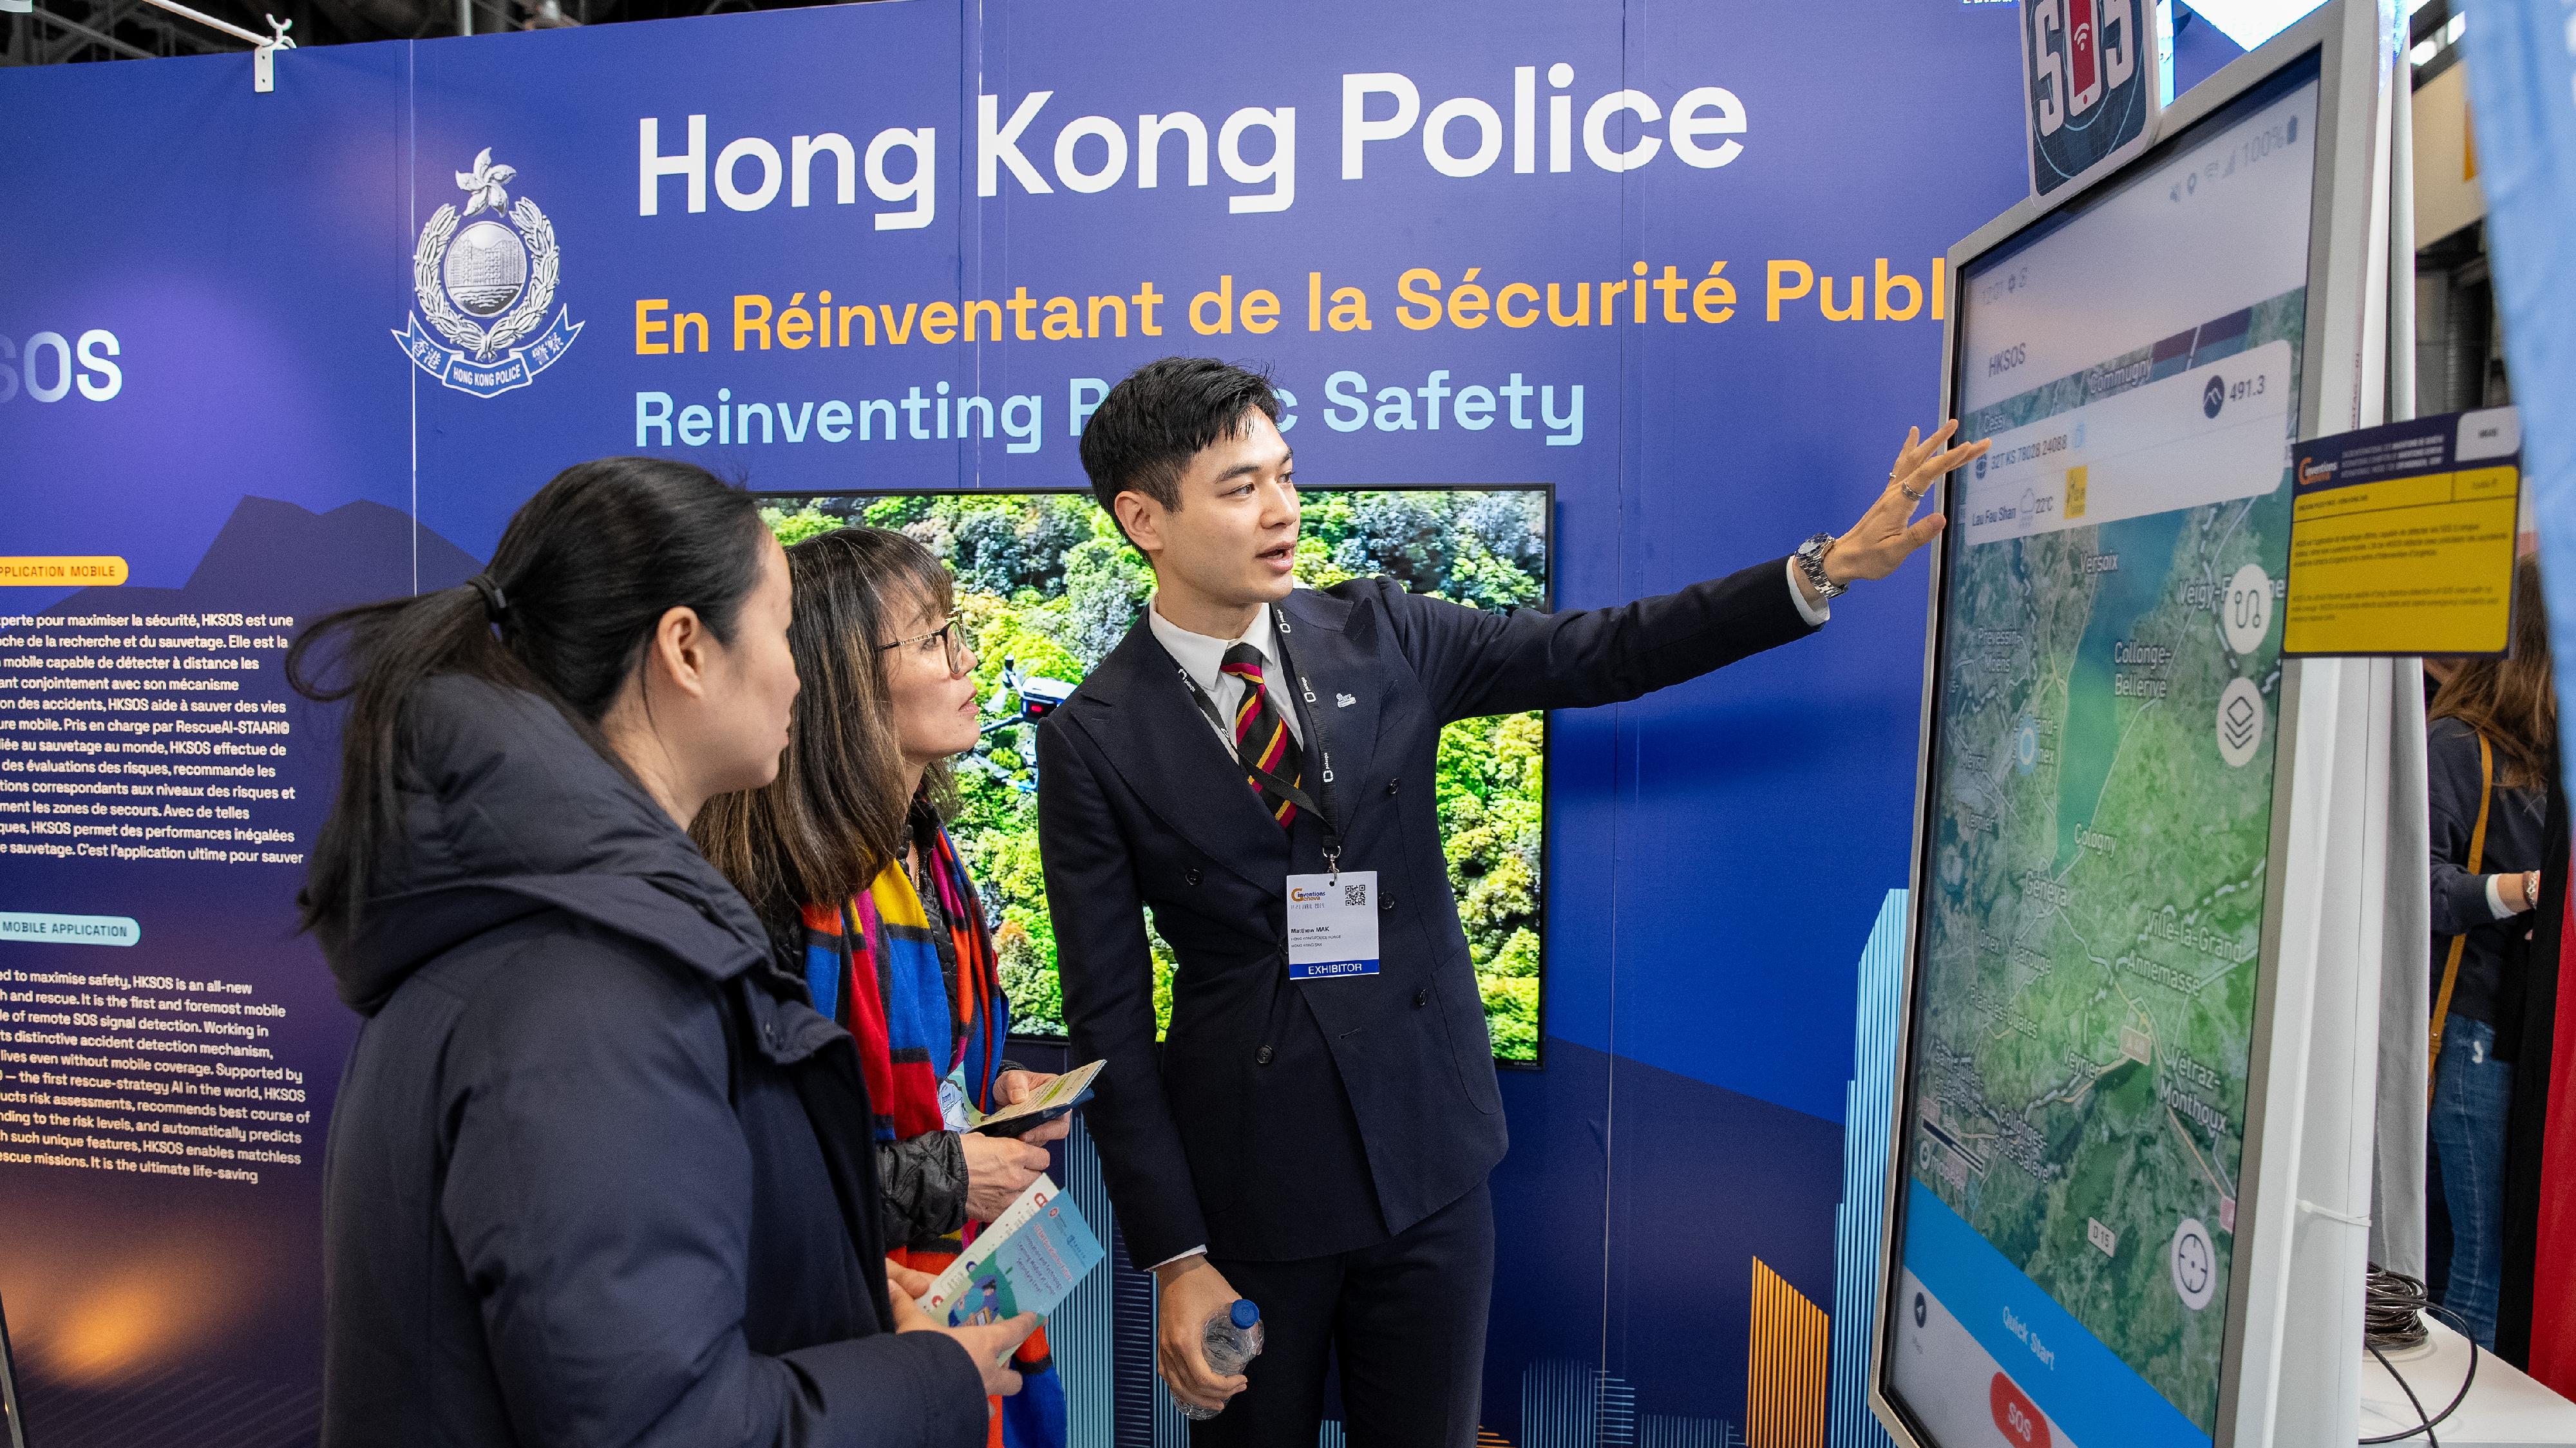 香港警務處資訊系統部人員四月十七日至二十一日在瑞士日內瓦參與第四十九屆日內瓦國際發明展。圖示其中一項獲奬參賽項目HKSOS手機應用程式 — 配合全新自動意外偵測功能保障市民生命的緊急應用程式。